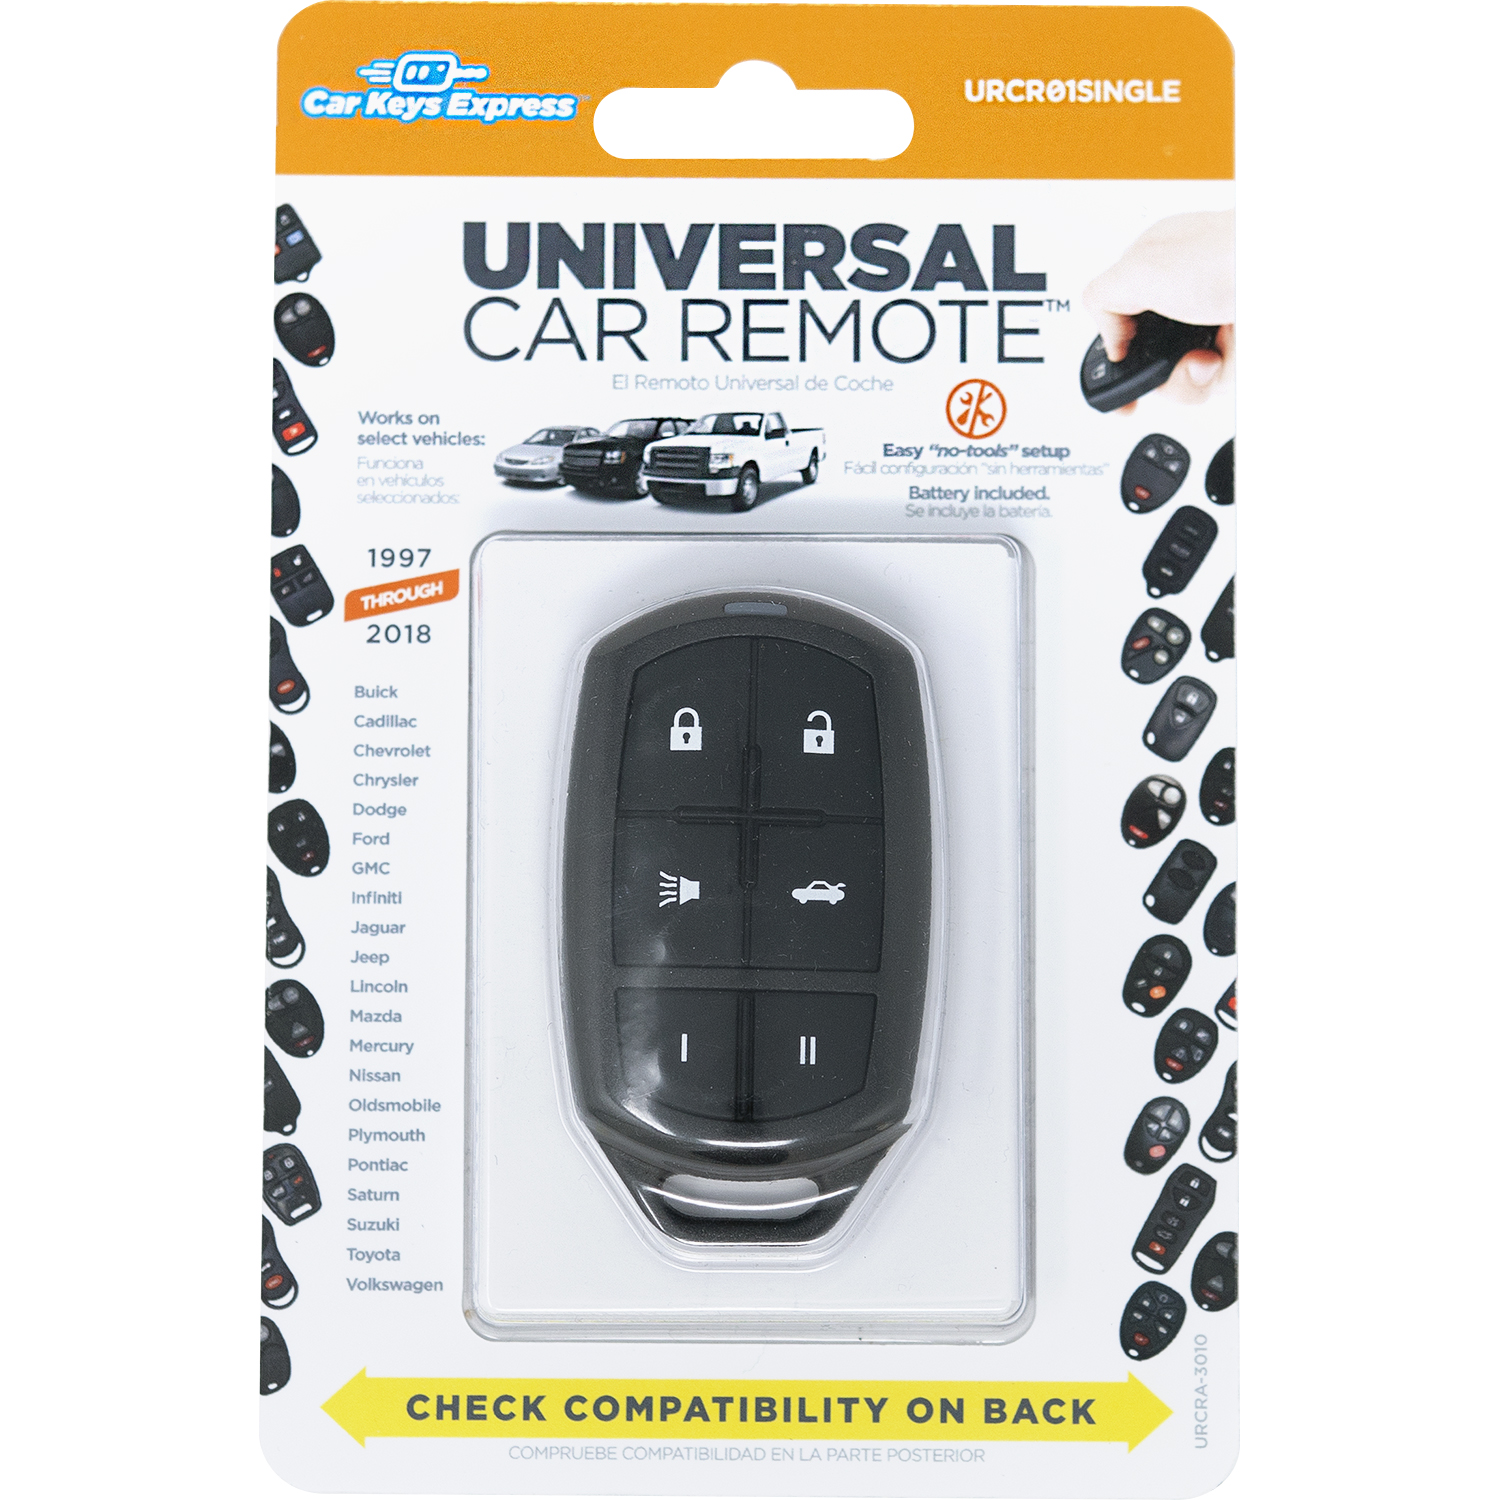 9900円 【新品】 KeylessOption Replacement Keyless Entry Remote Control Car Key Fob - Black並行輸入品